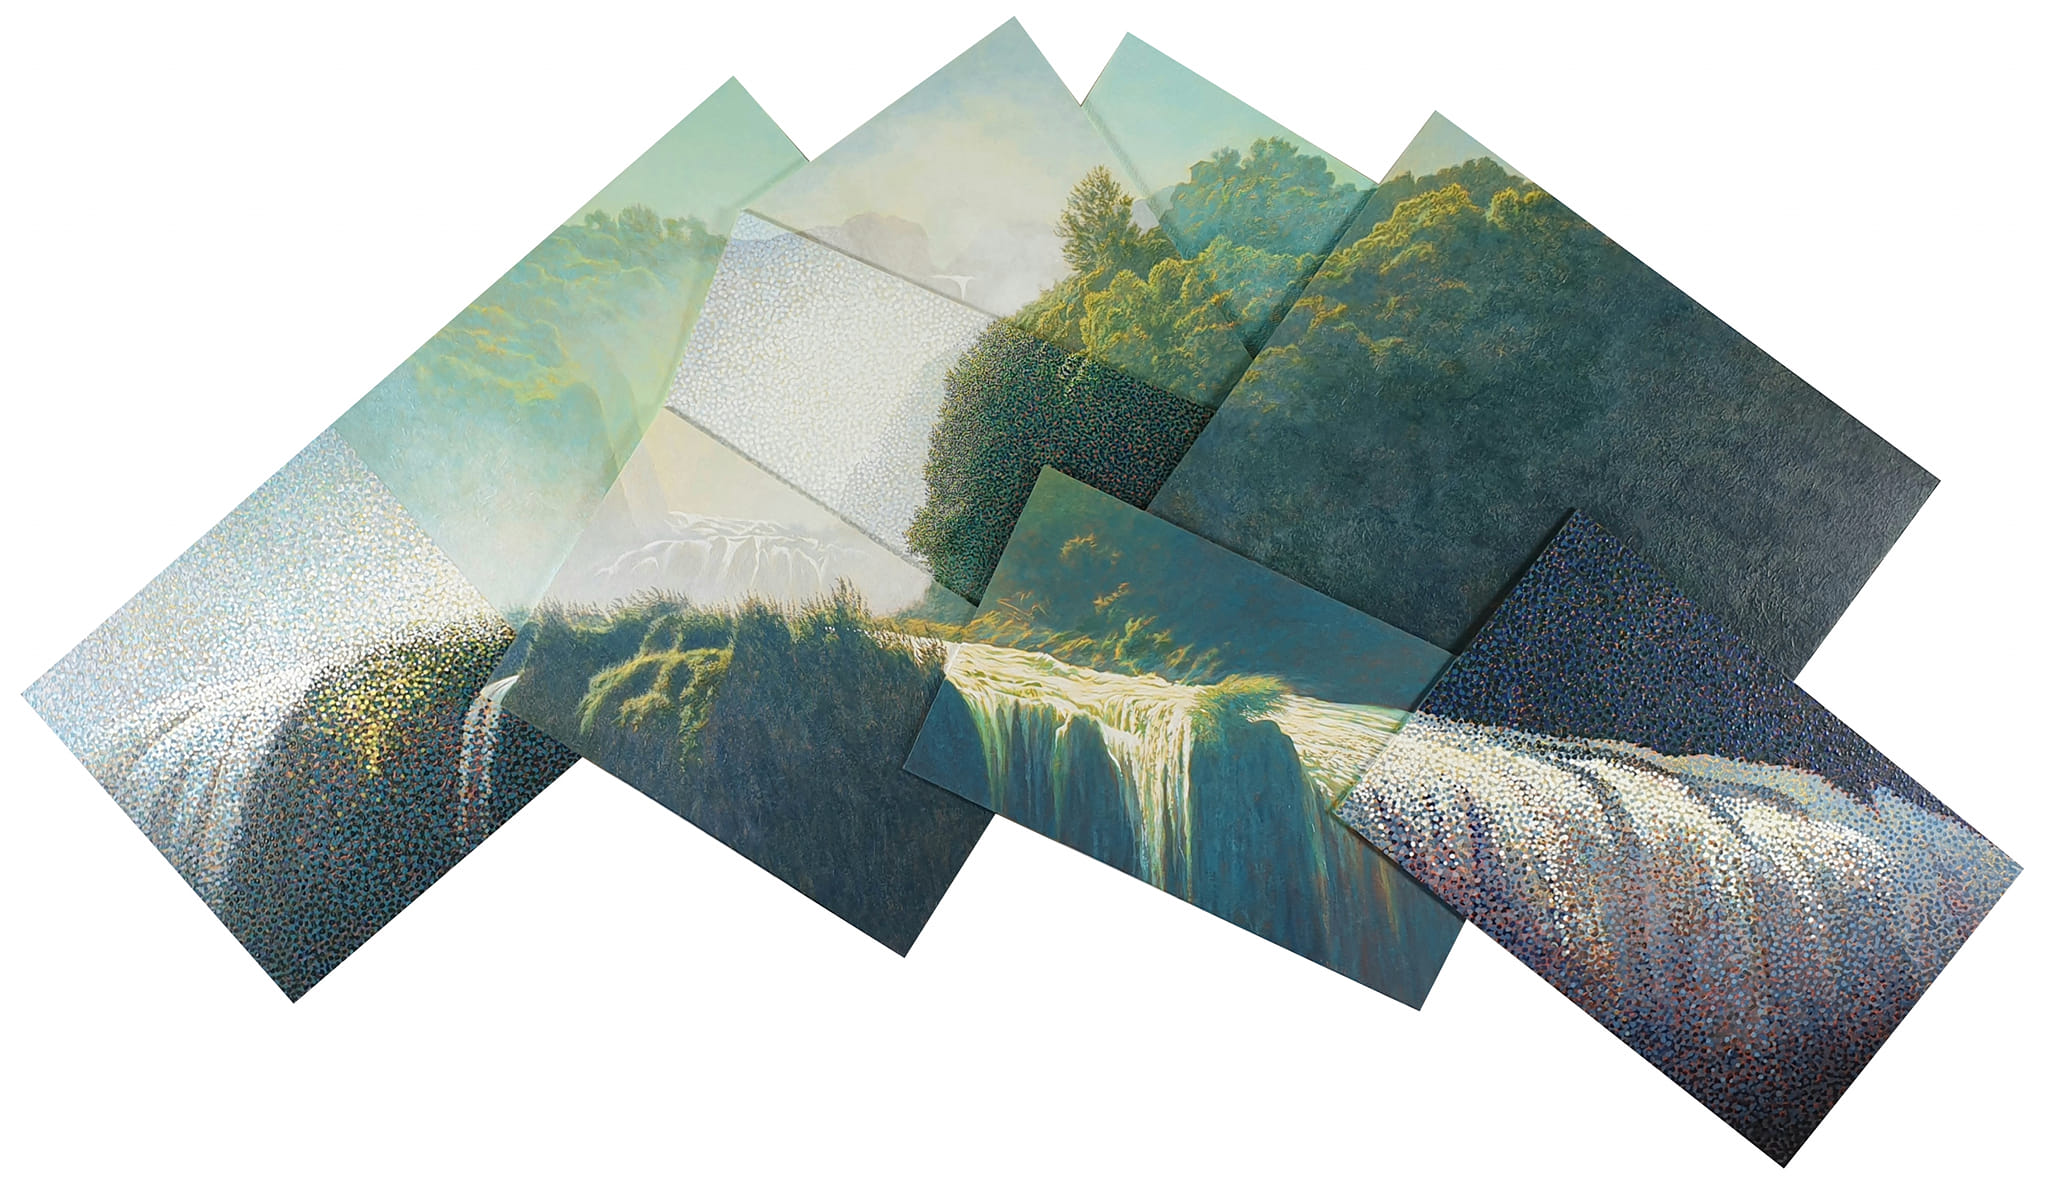 Dipinto della Cascata Marmore realizzato da Lars Physant per il Terni Falls Festival 2021